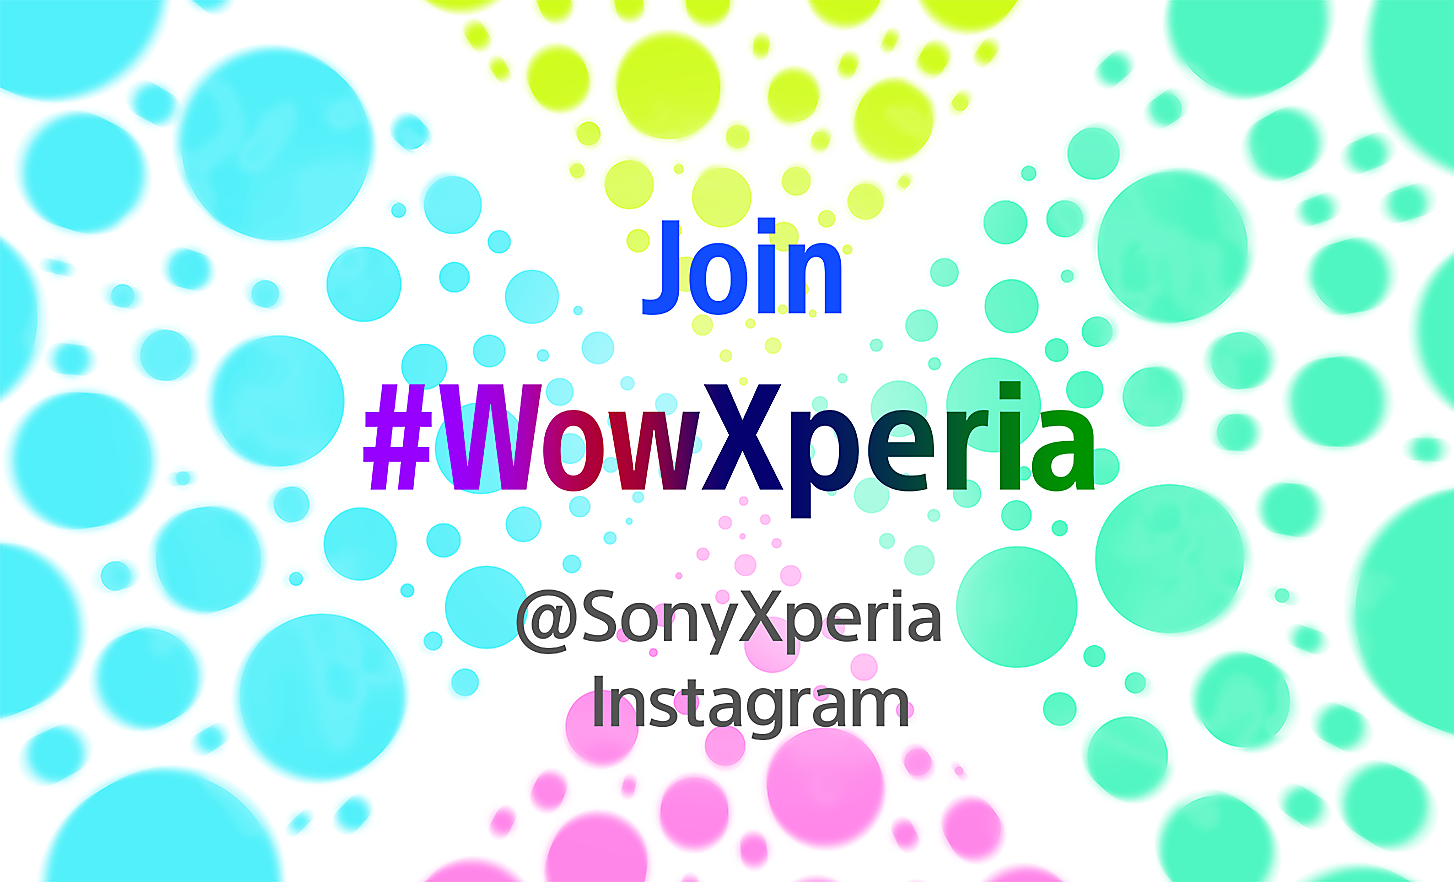 Image de bulles de couleur et de tags de réseaux sociaux superposés indiquant comment rejoindre #WowXperia sur fond blanc